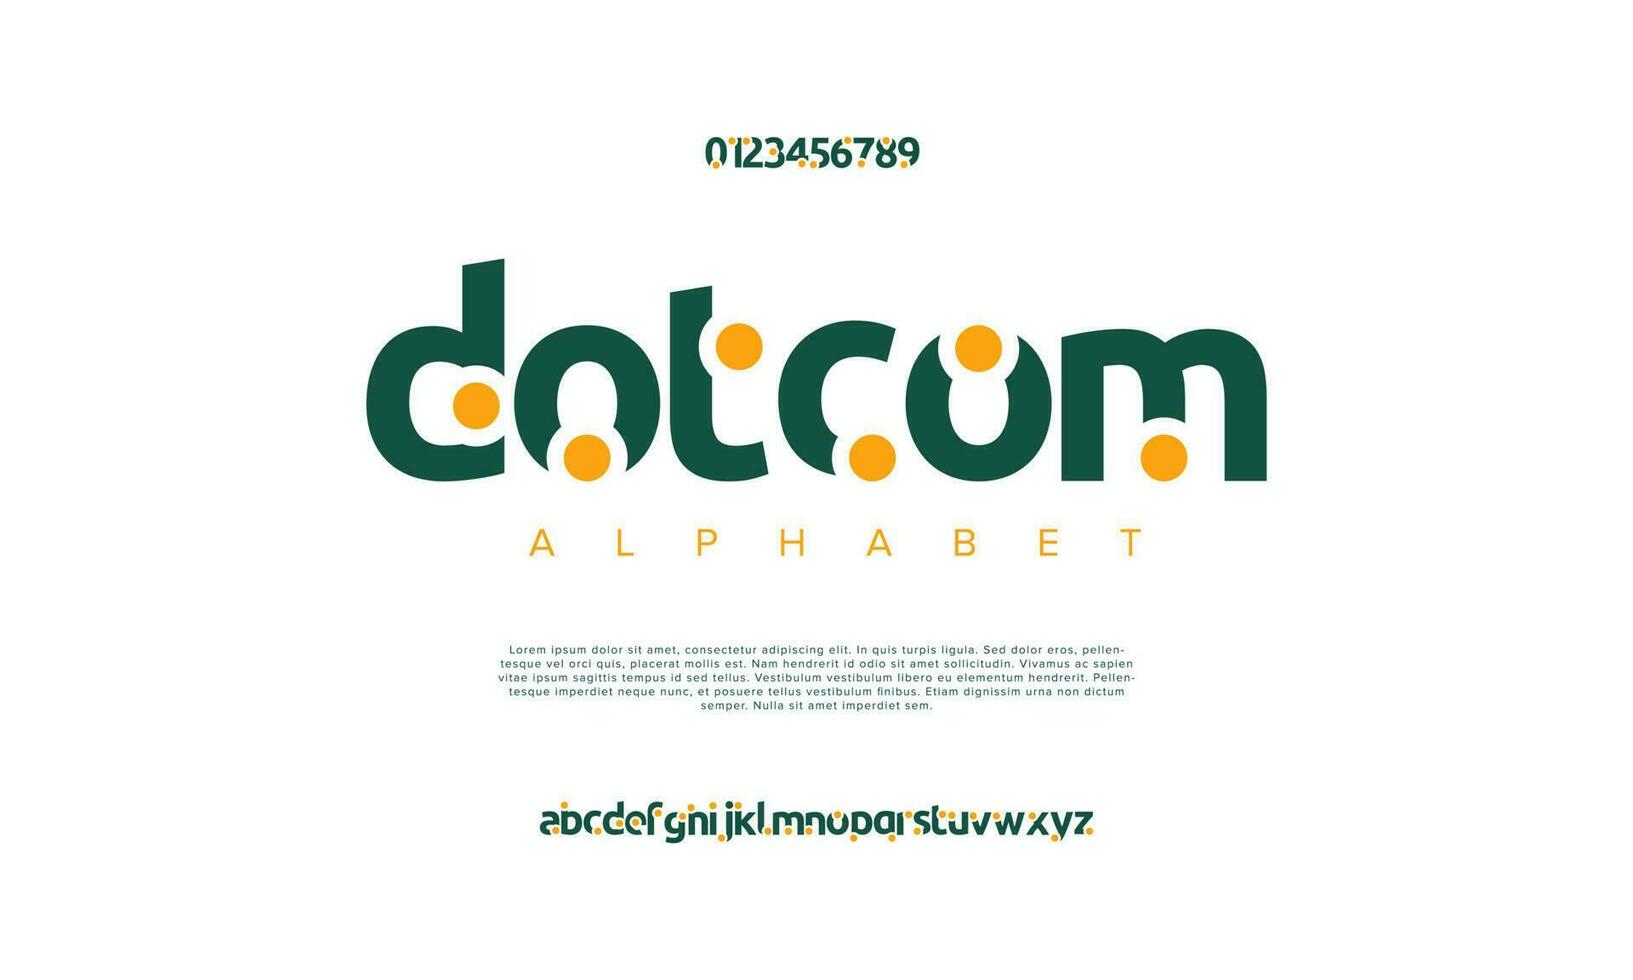 puntcom abstract digitaal technologie logo doopvont alfabet. minimaal modern stedelijk fonts voor logo, merk enz. typografie lettertype hoofdletters kleine letters en nummer. vector illustratie